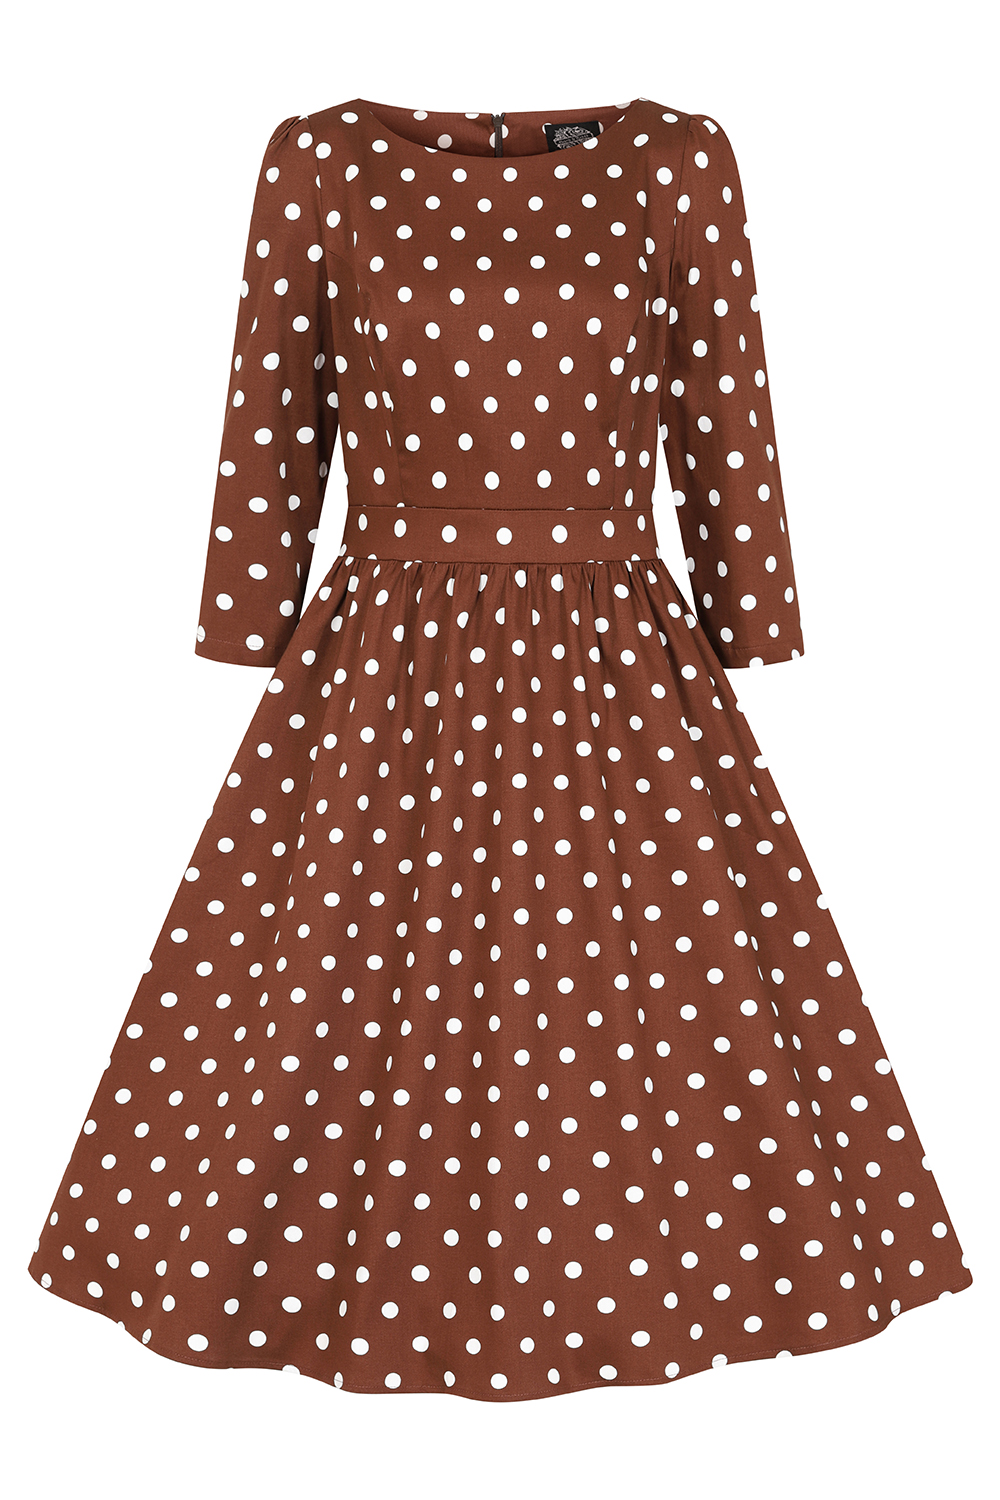 Milana Polka Dot Swing Dress in Brown